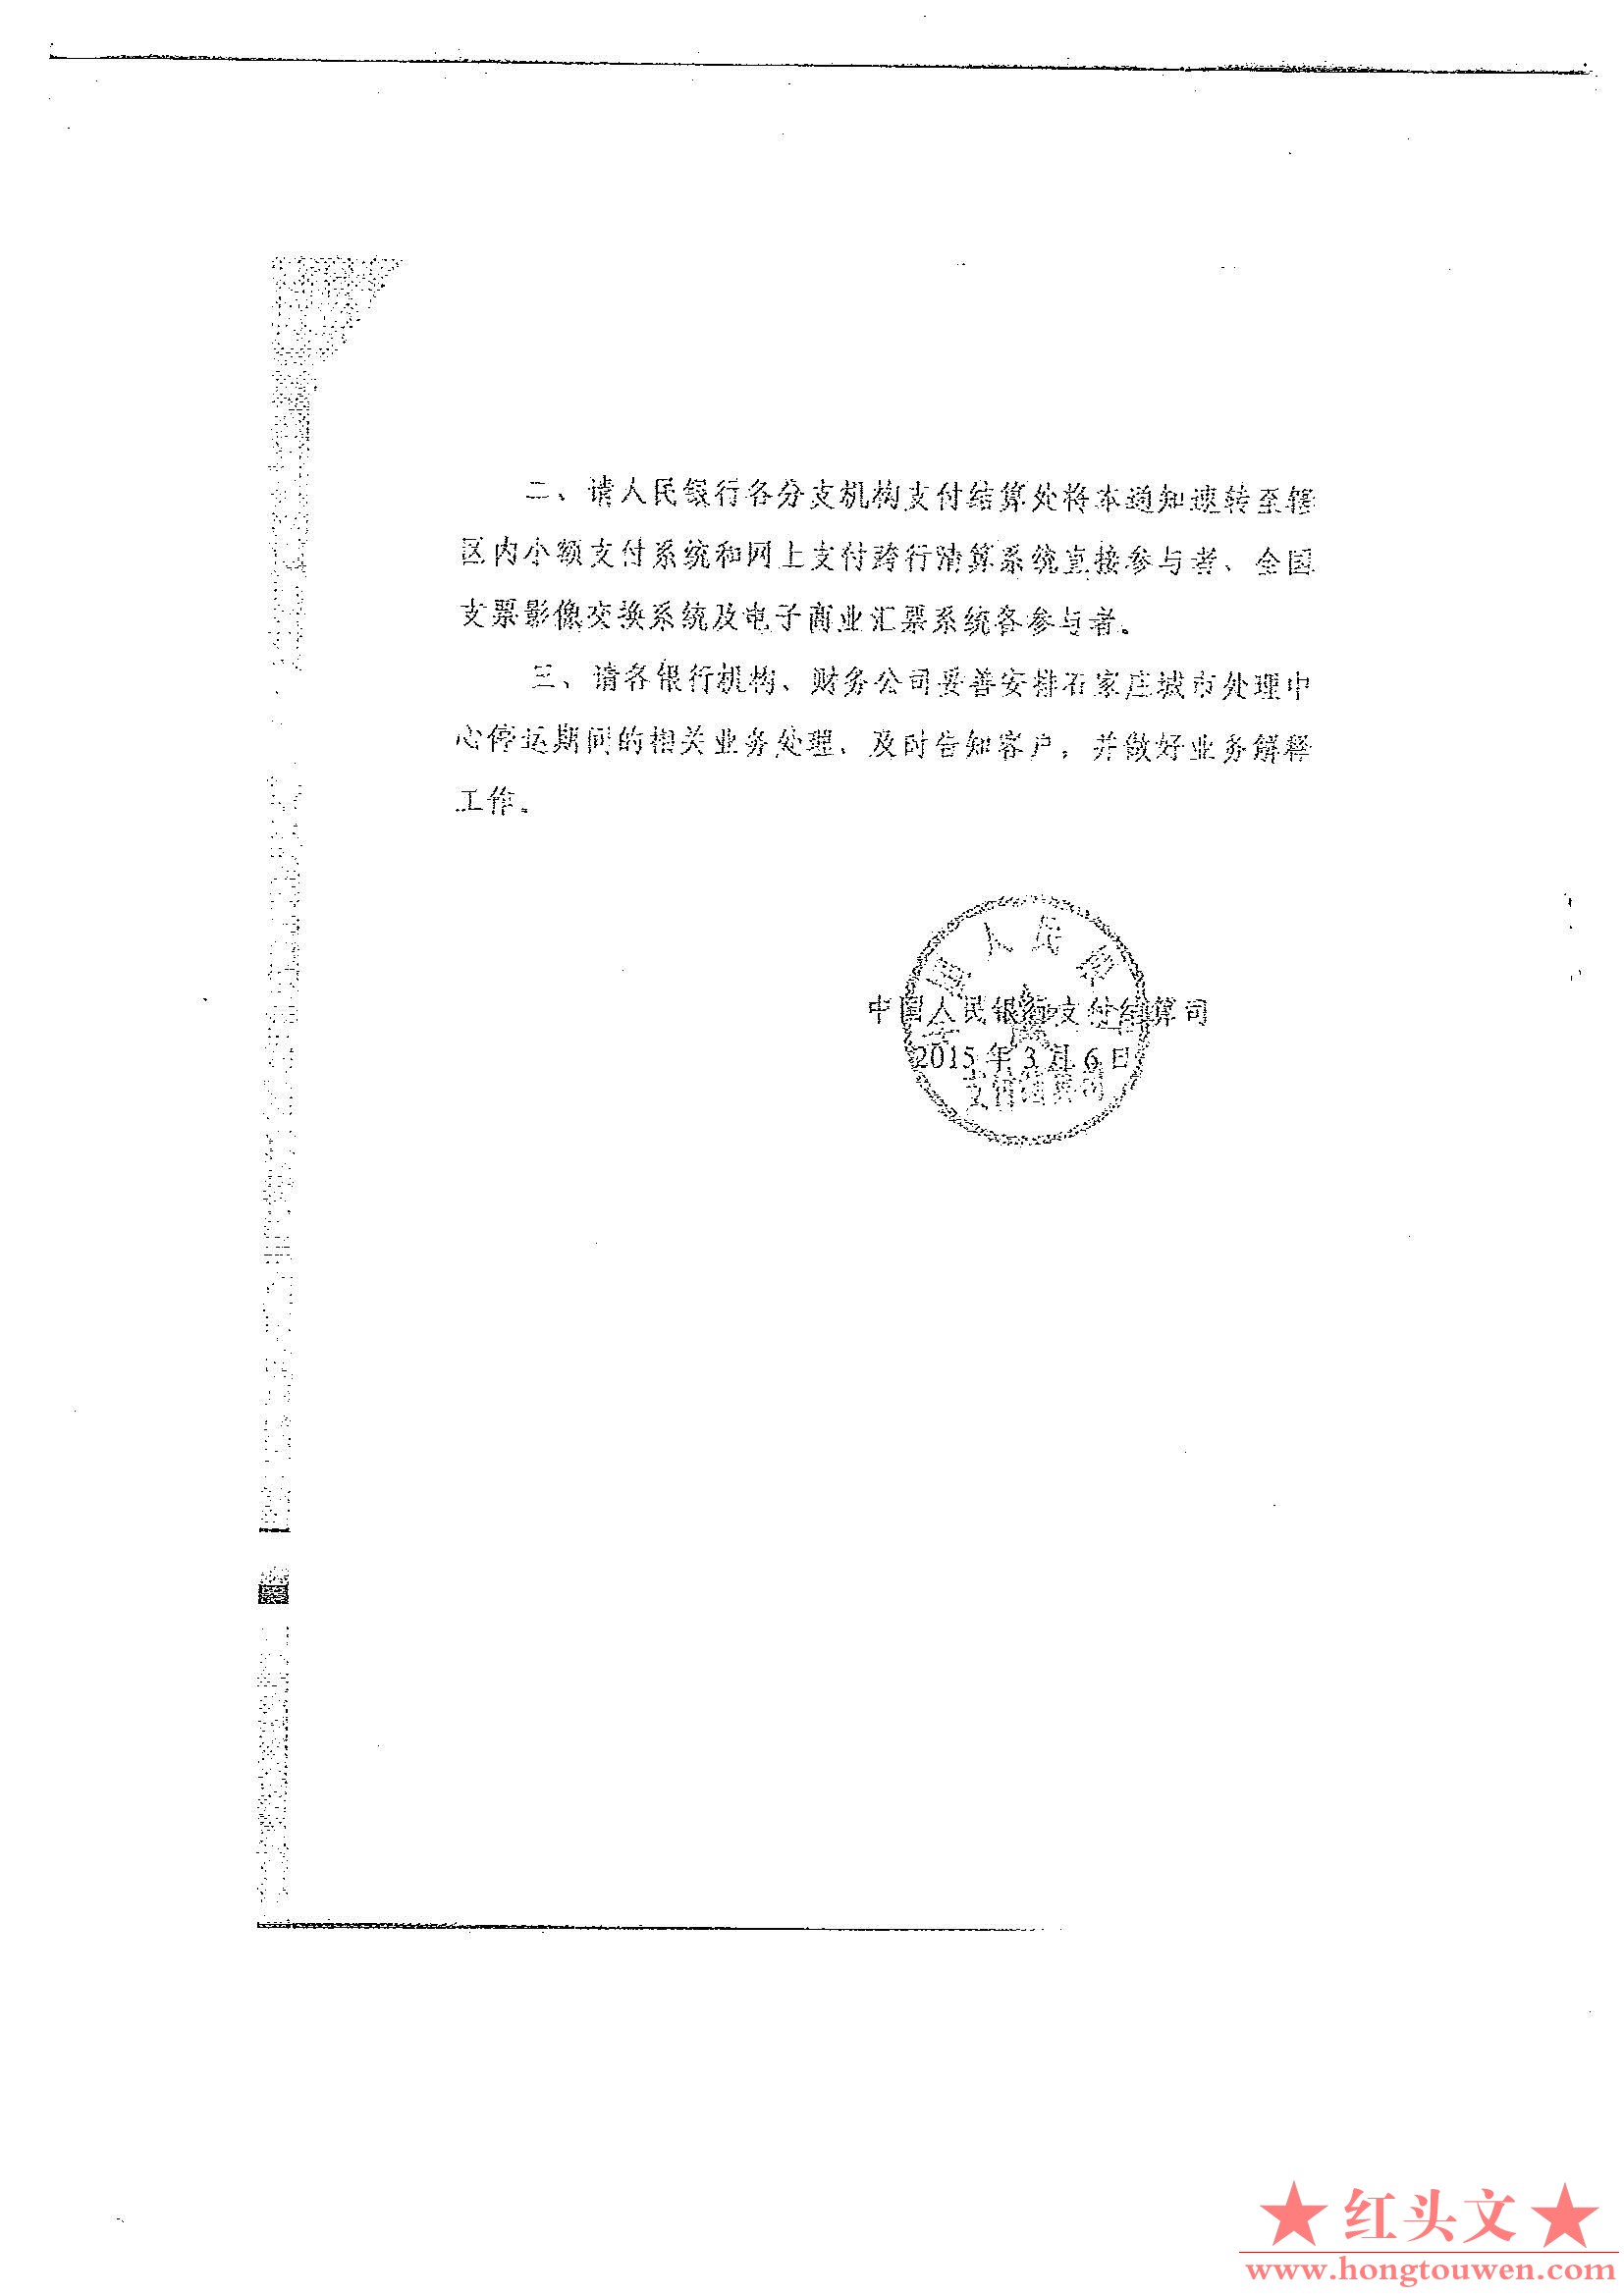 银支付函[2015]258号-中国人民银行支付结算司关于支付系统石家庄城市处理中心停运的通.jpg